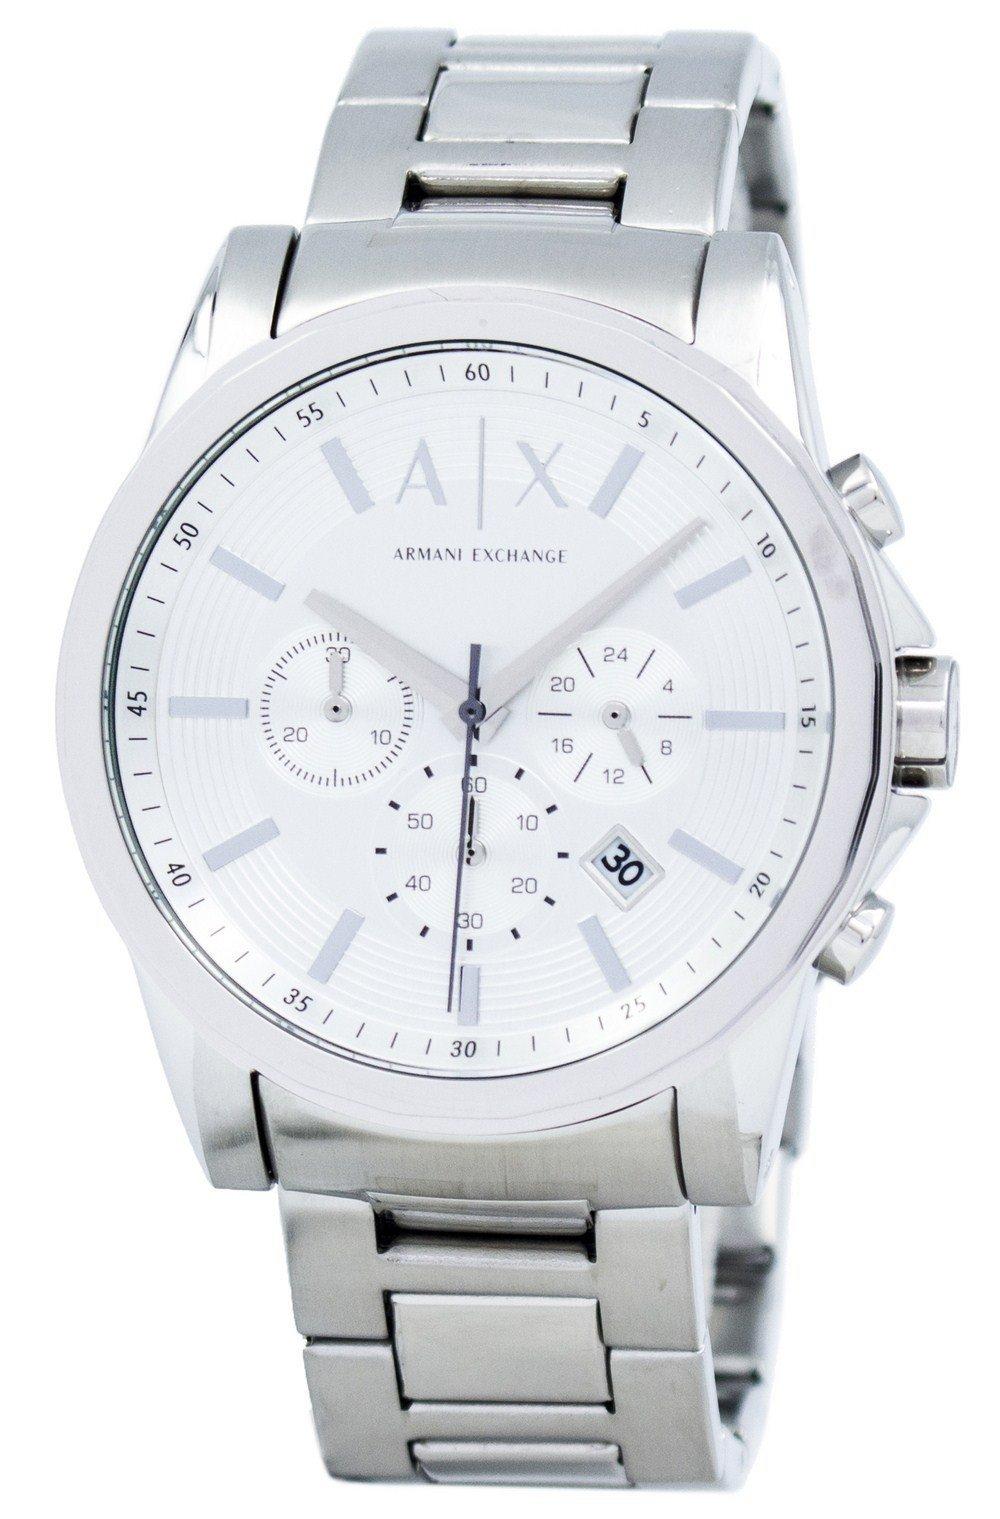 Armani Exchange Chronograph Silver-Tone Dial AX2058 Men's Watch - Klatchit